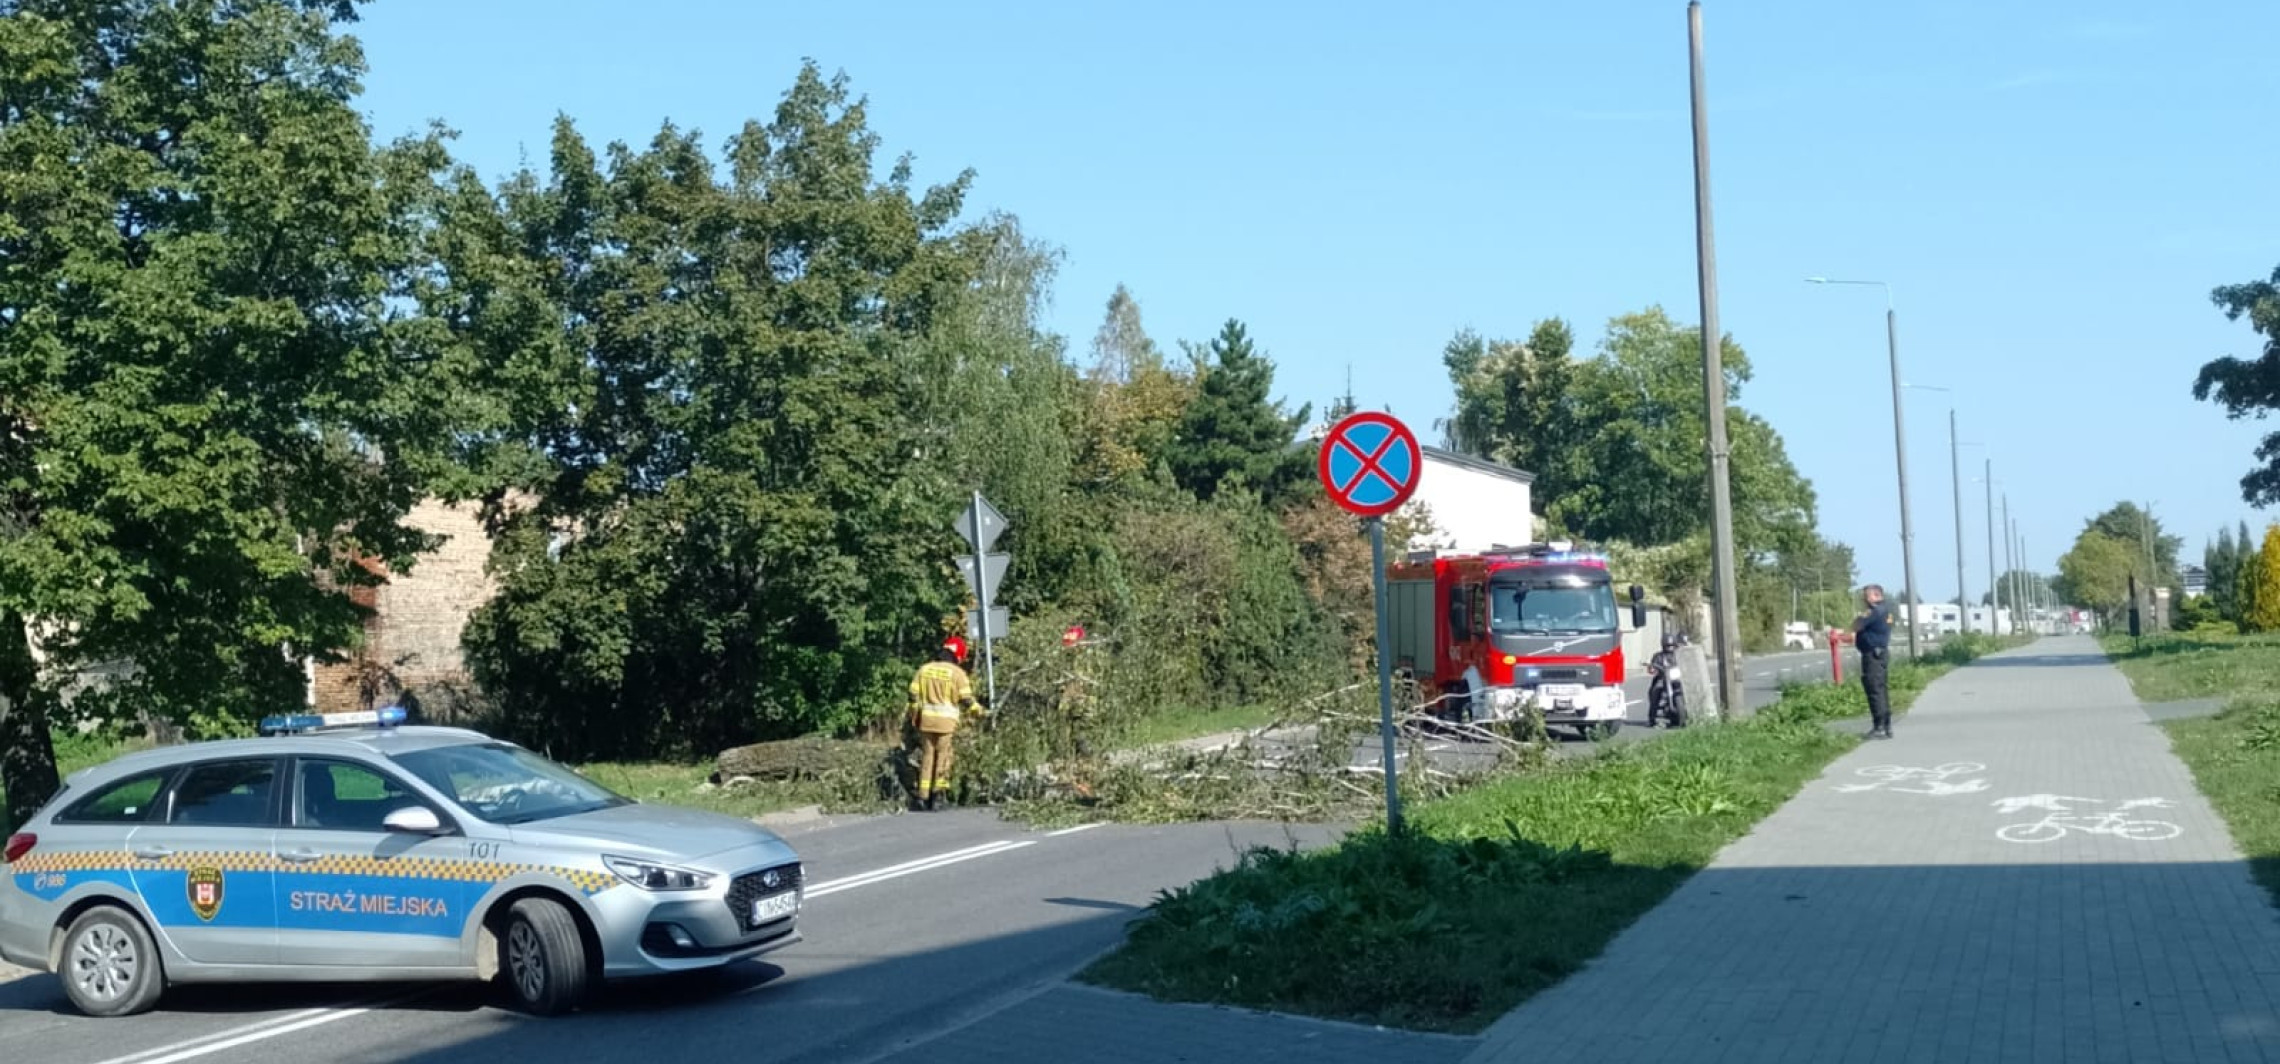 Inowrocław - To drzewo stwarzało zagrożenie na drodze. Interweniowali strażacy